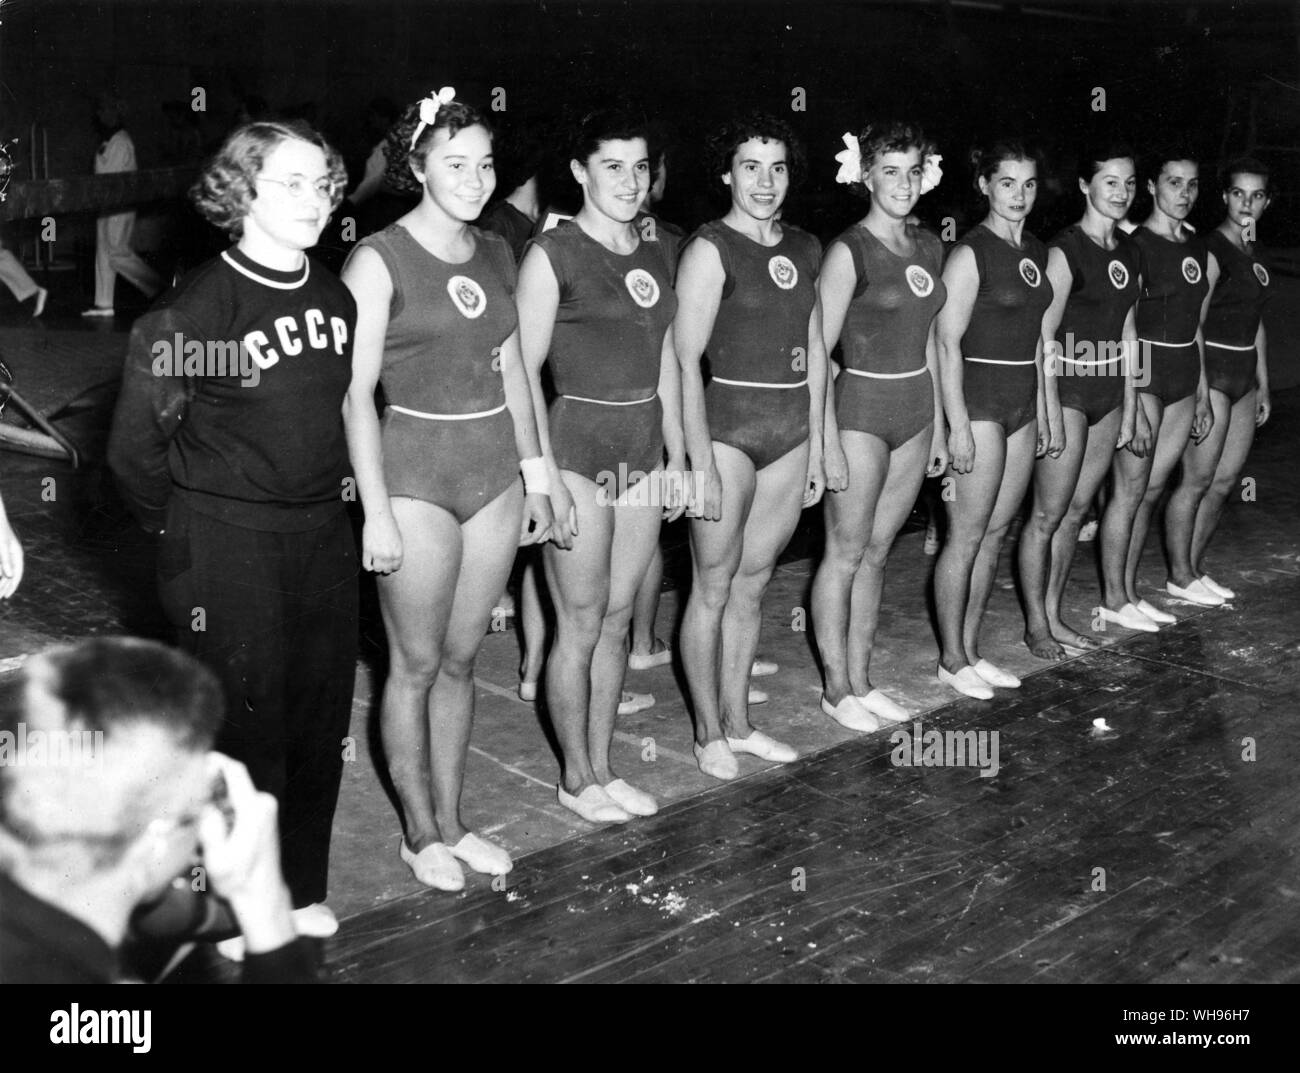 Finnland, Helsinki/Olympics, 1952: Gymnastik der sowjetischen Frauen Team. Stockfoto